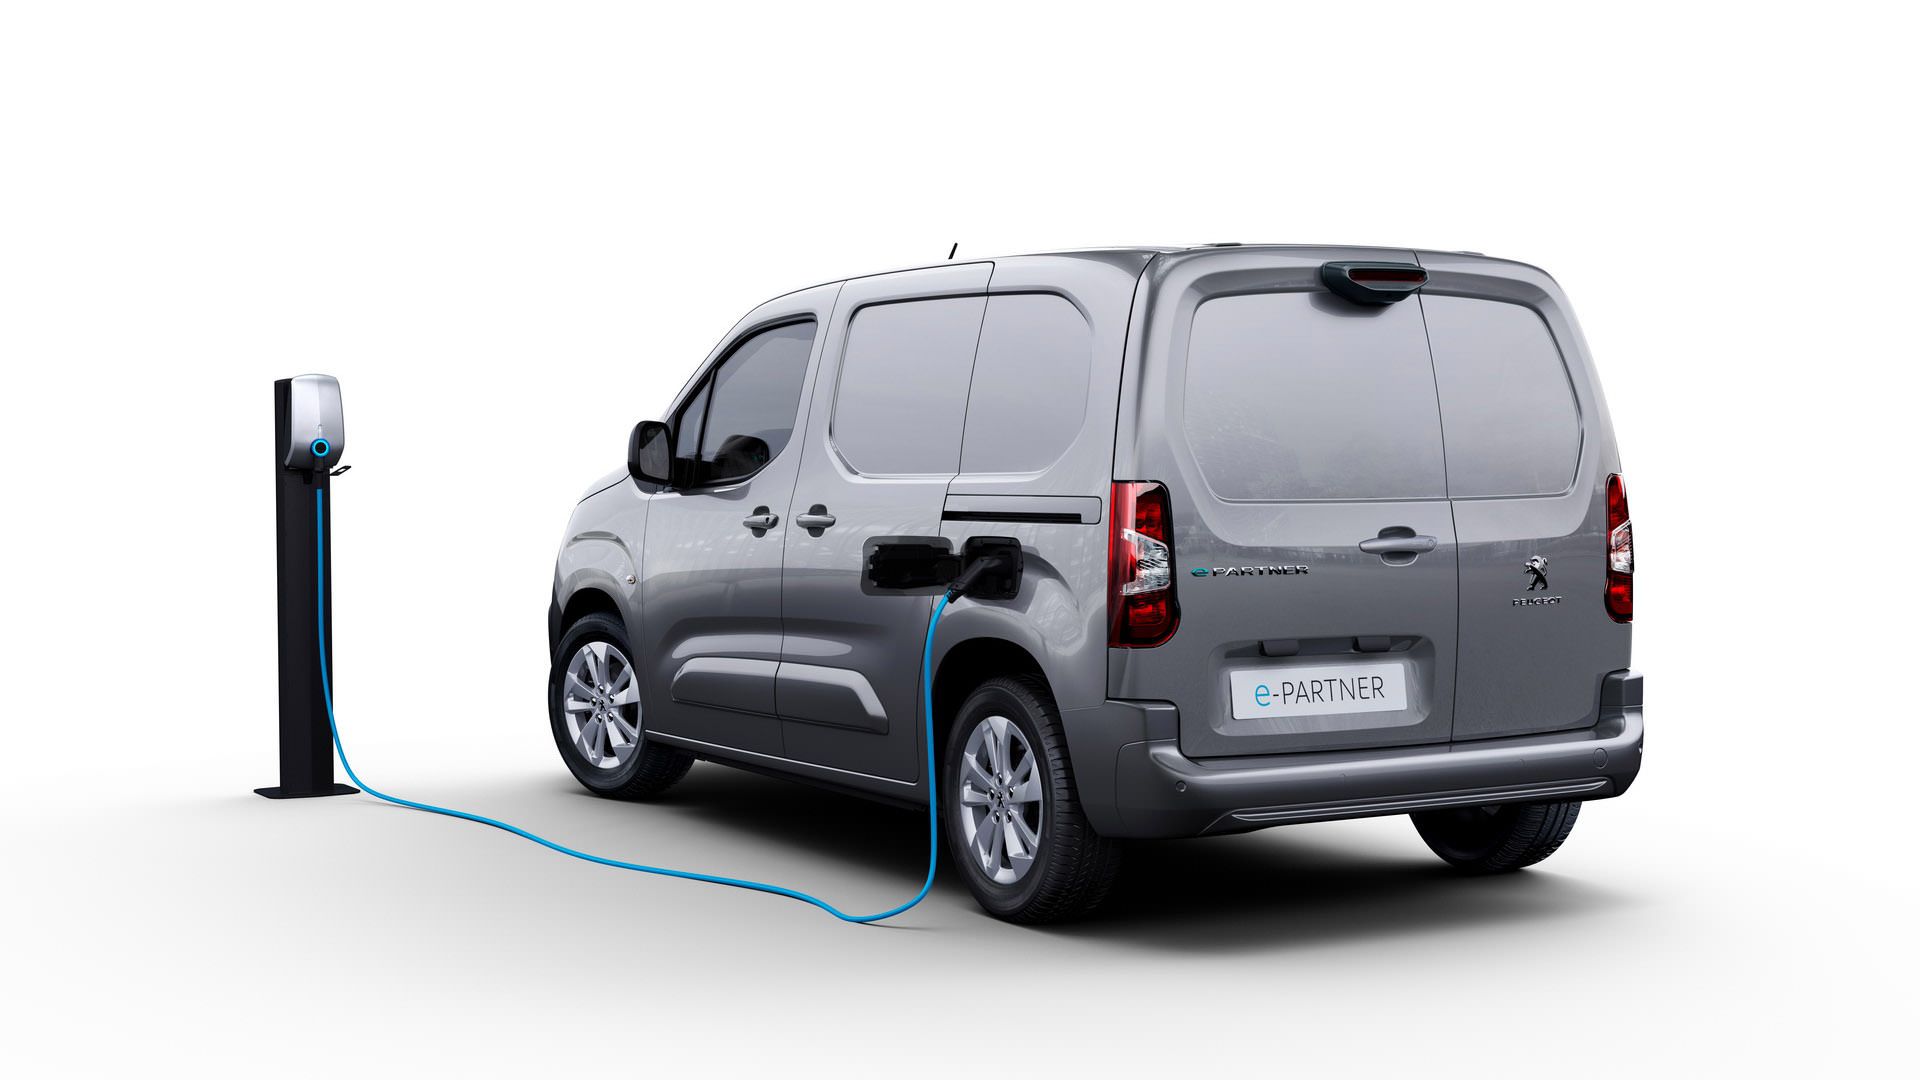 نمای عقب ون برقی پژو ای-پارتنر / 2021 Peugeot e-Partner Electric van خاکستری در حال شارژ 